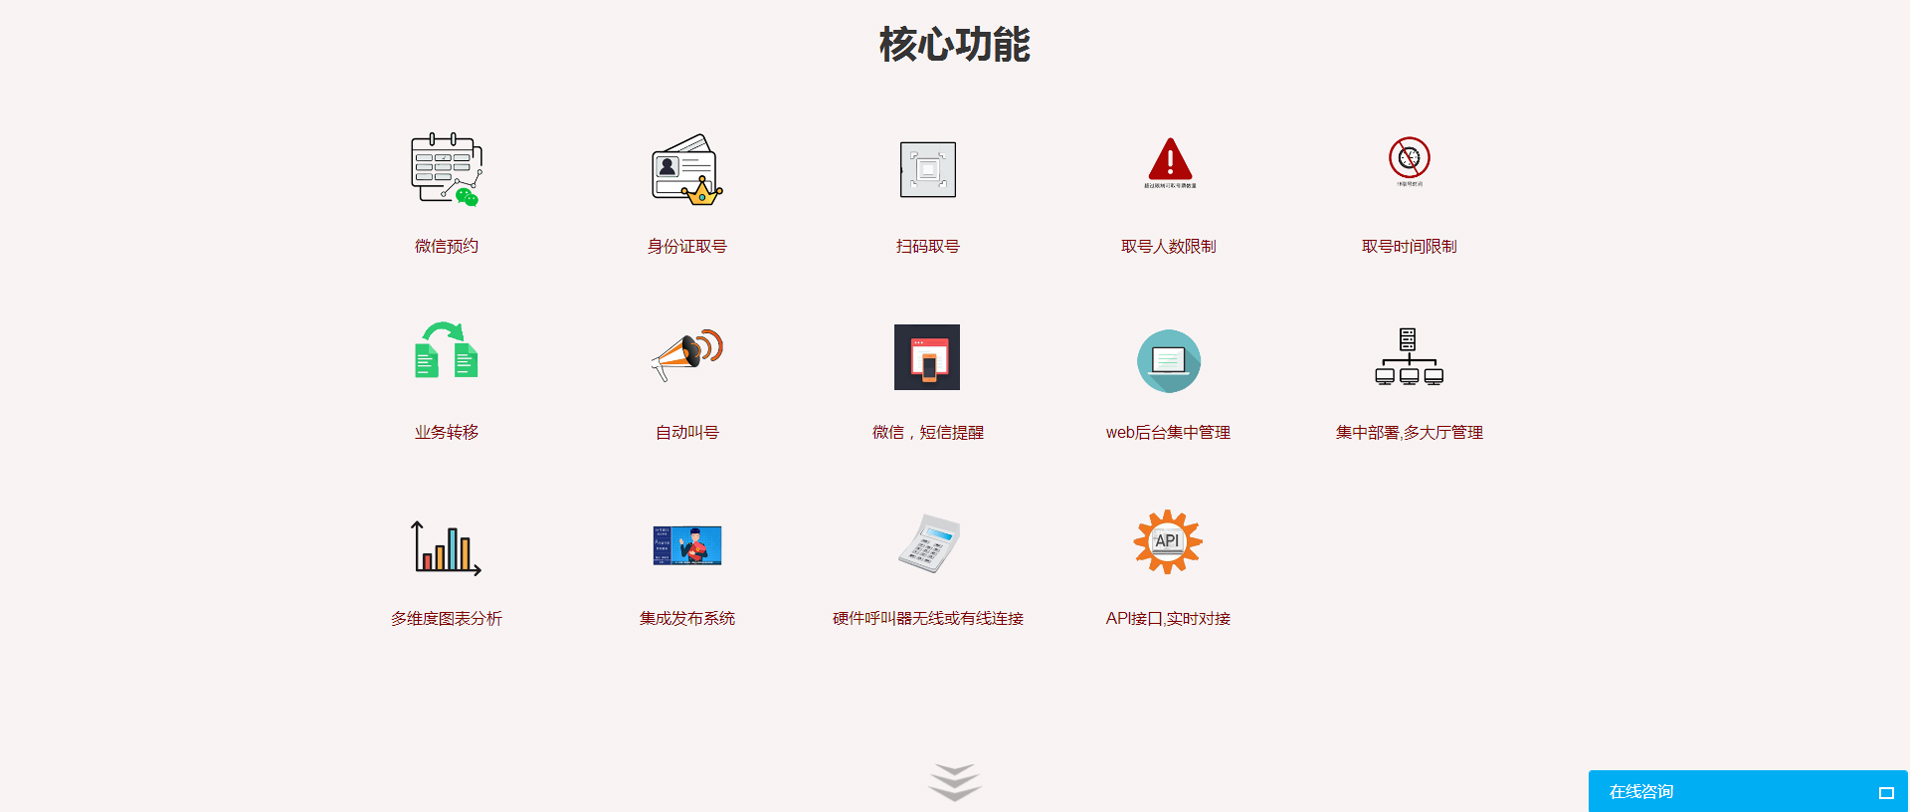 上海蓝宗电子科技有限公司.jpg